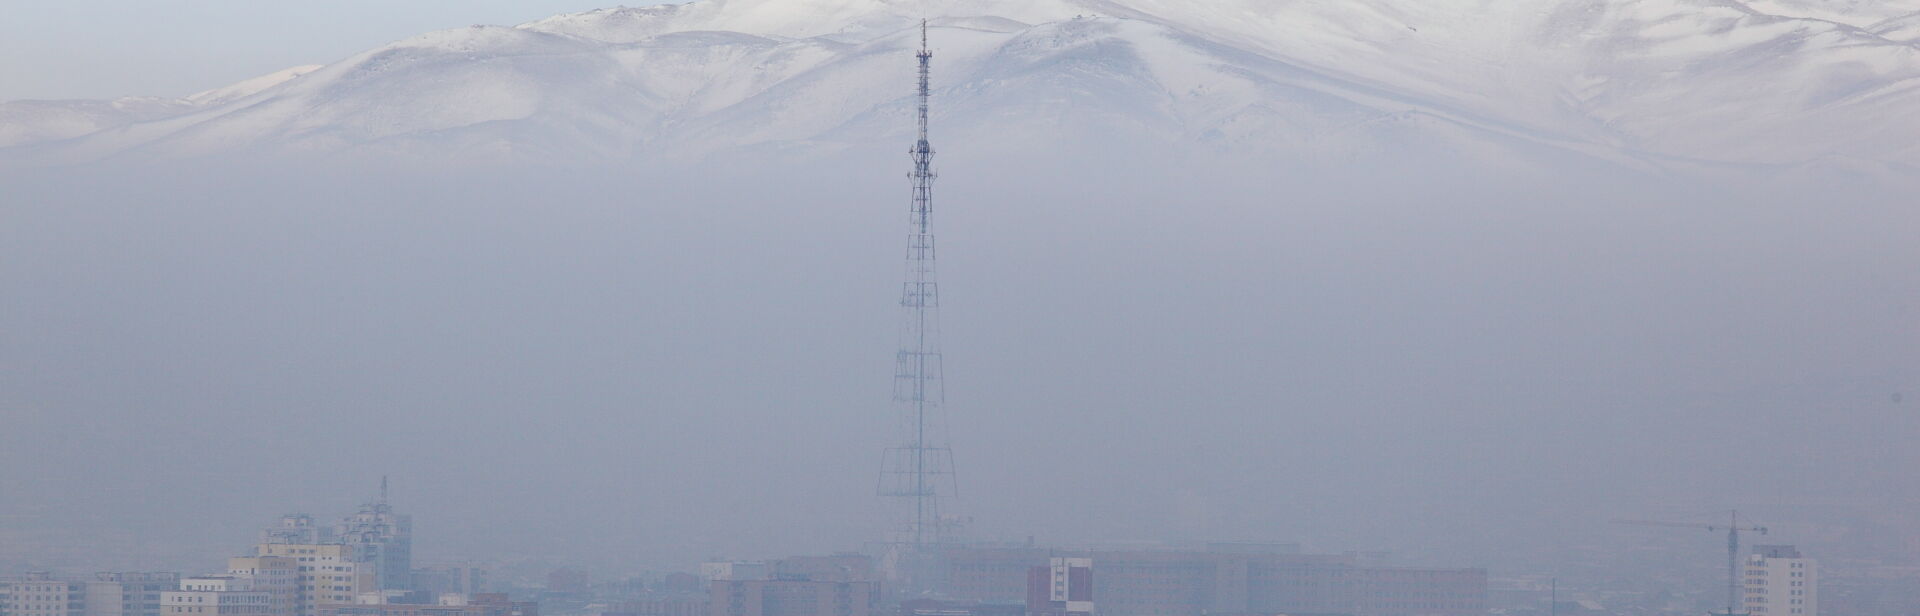 smog filled skyline of Ulaan Baatar